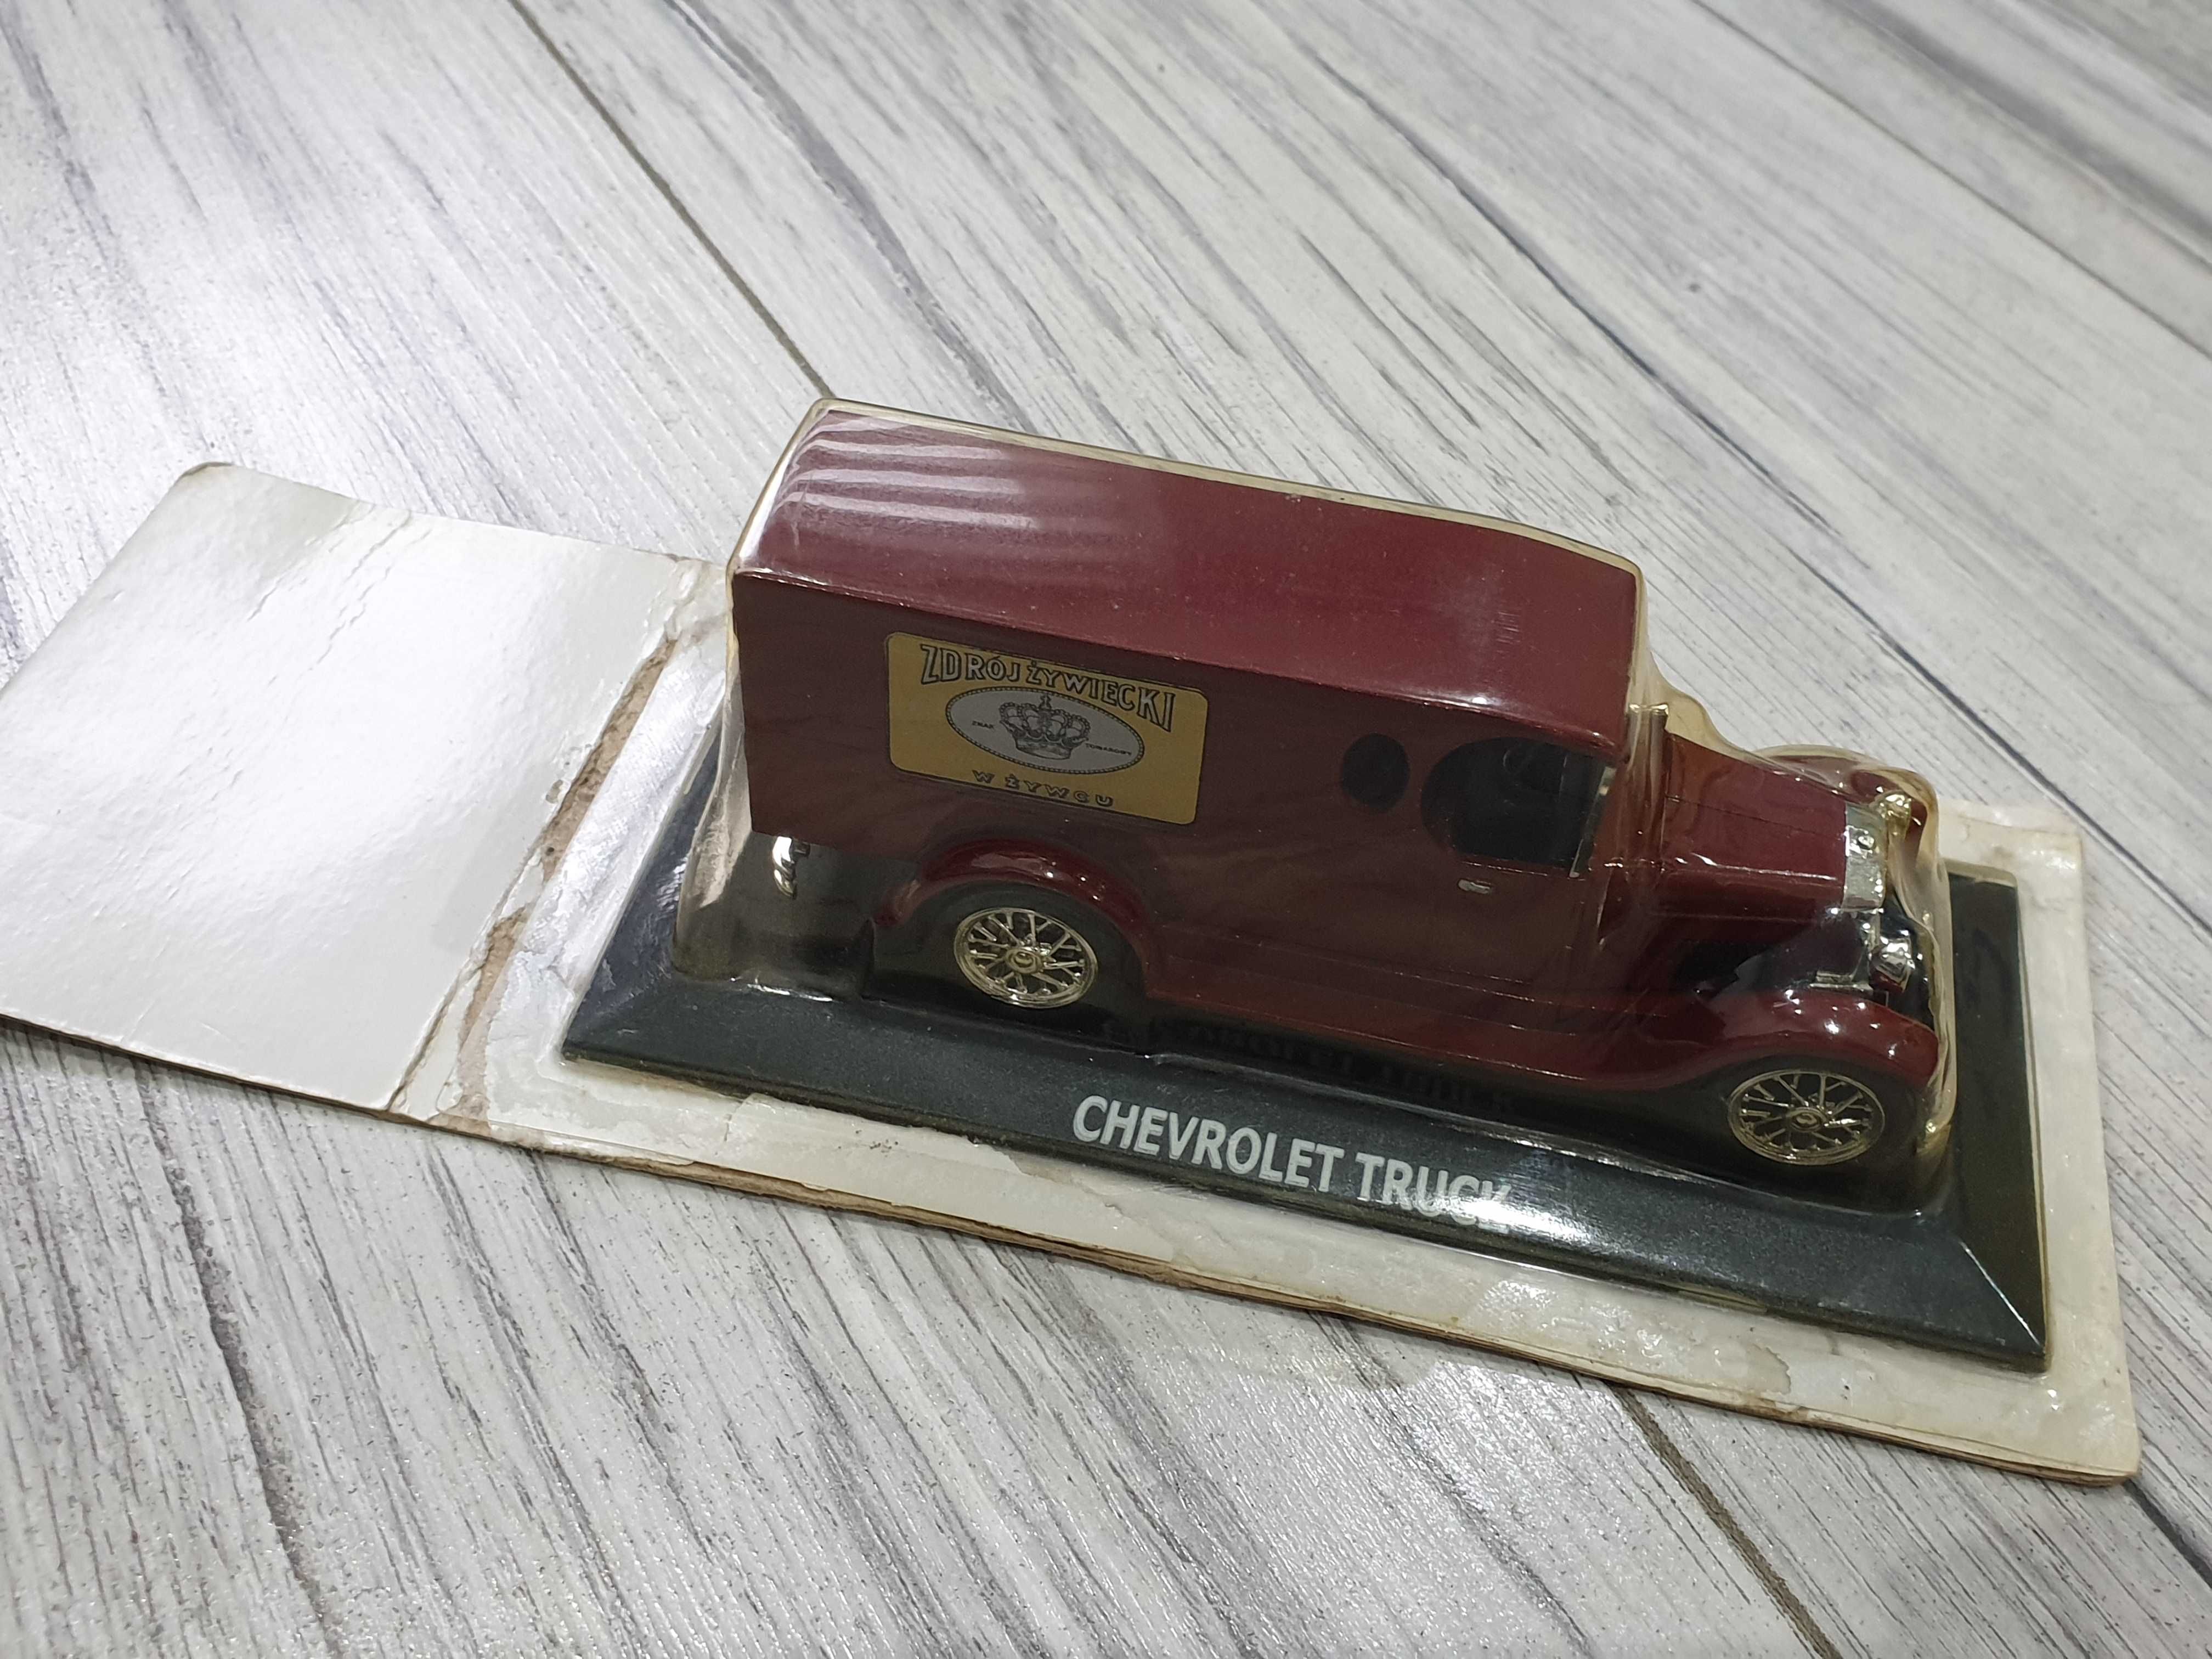 Model Kolekcjonerski - Chevrolet Truck / Galicyjski Wóz Piwny